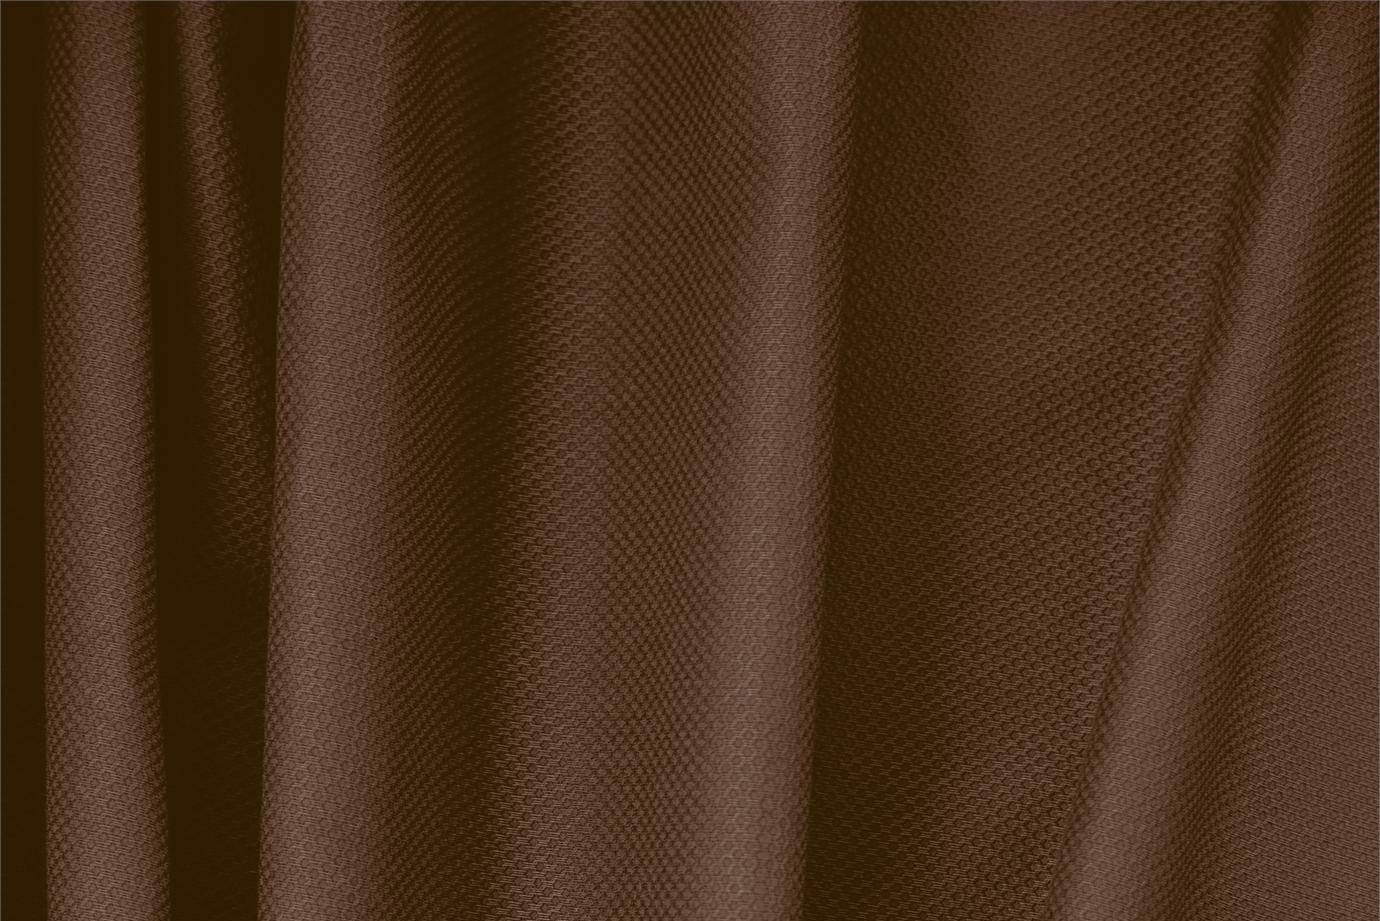 Tissu Piquet Stretch Marron cacao en Coton, Stretch pour vêtements